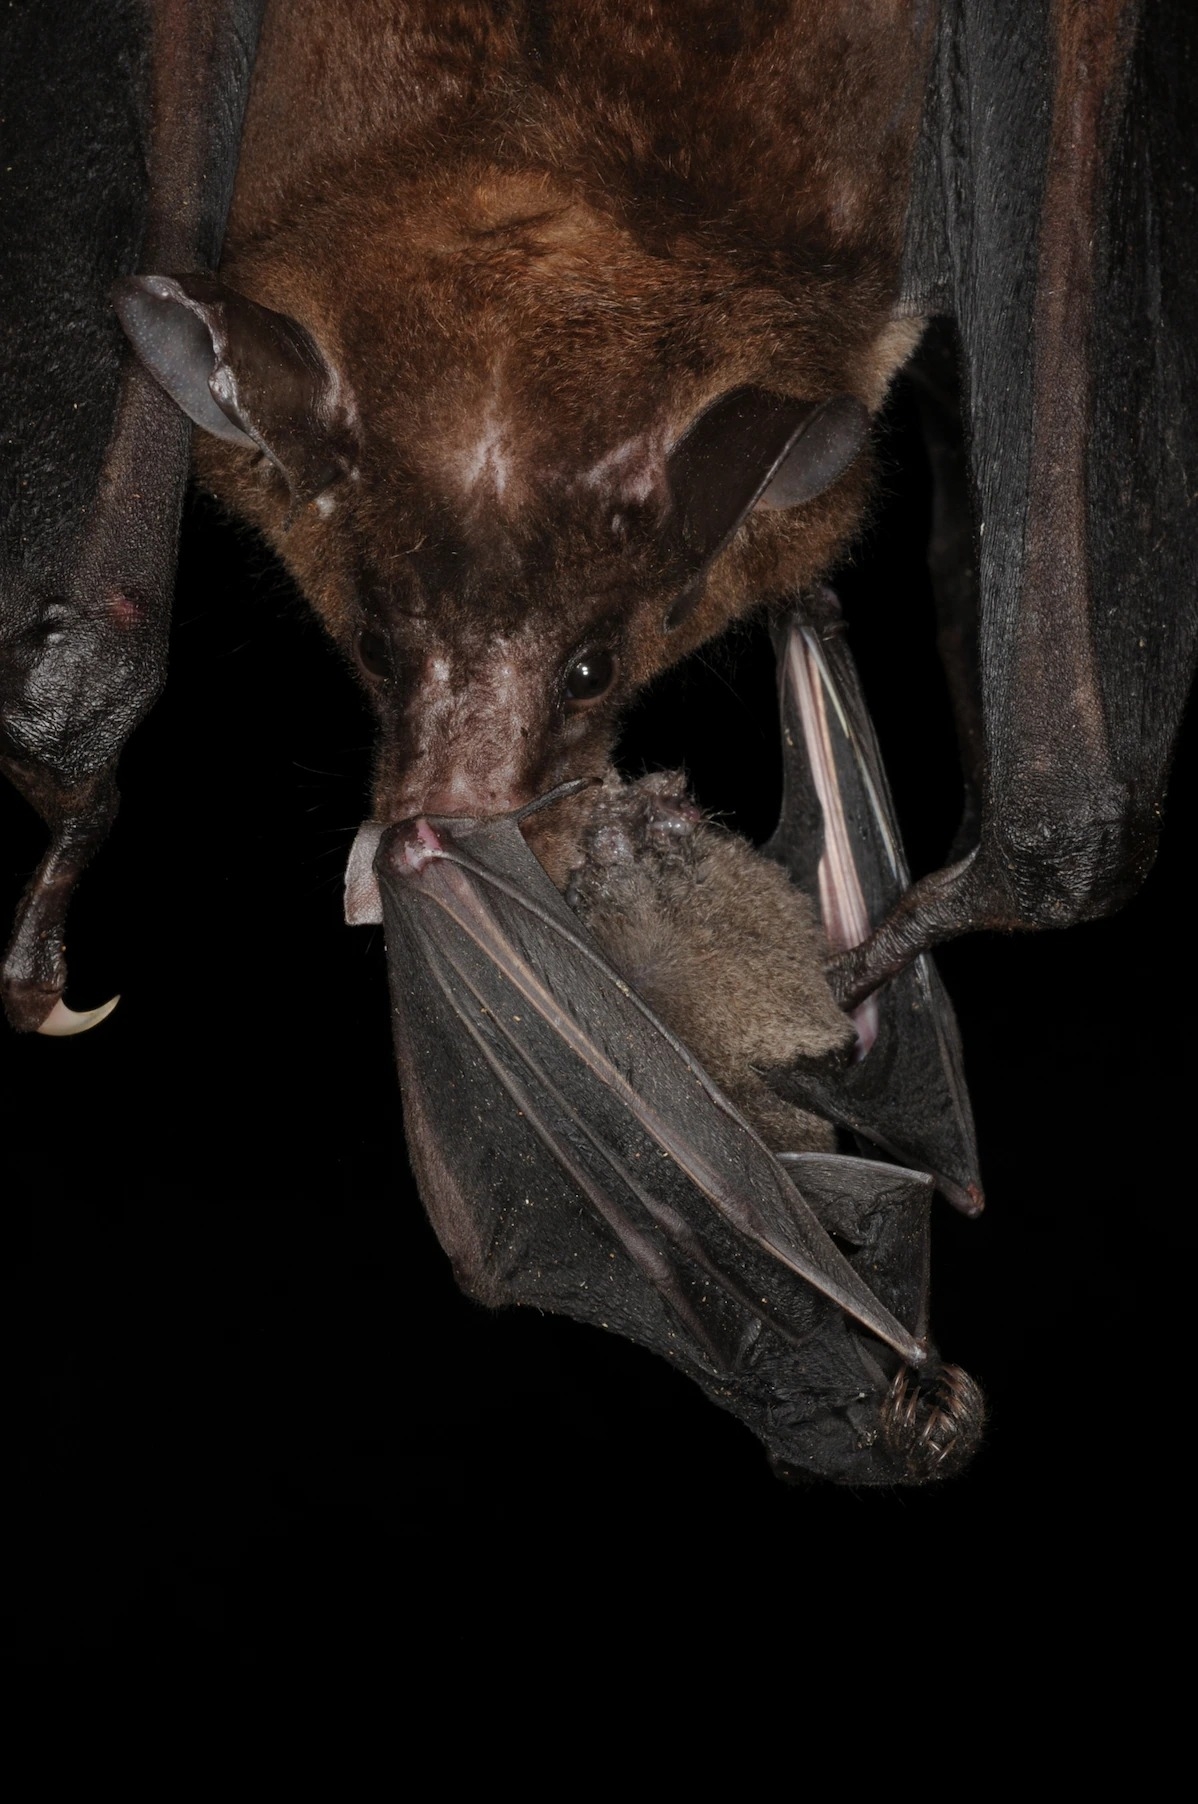 西半球最大的蝙蝠──鬼伪吸血蝠正在大啖一只短尾叶鼻蝠（ short-tailed bat ）。 PHOTOGRAPH BY MARCO TSCHAPKA